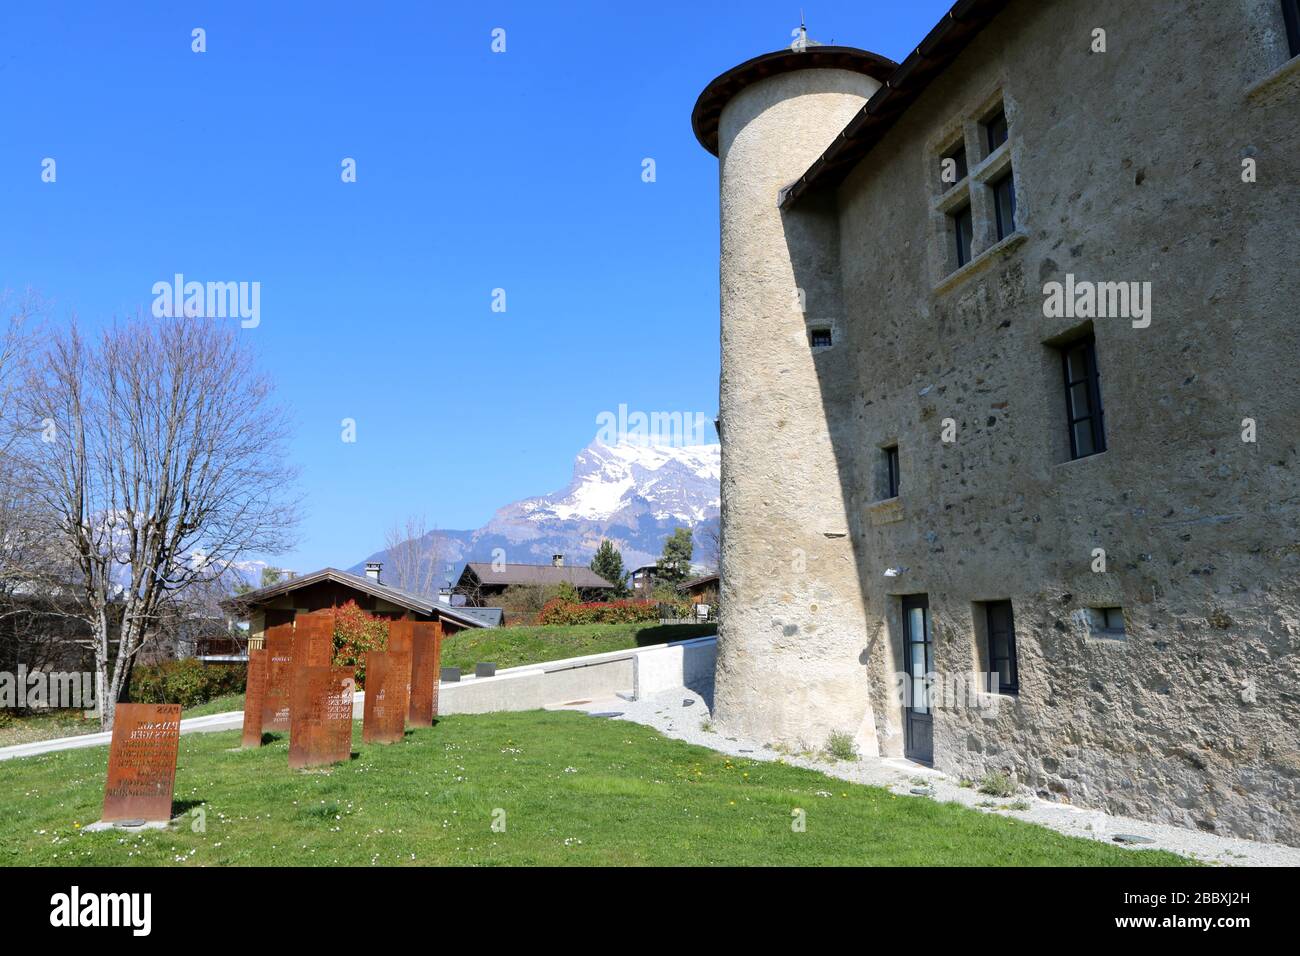 Maison Forte de Hautetour. Pôle culturel. Saint-Gervais-les-Bains. Haute-Savoie. France. Stock Photo